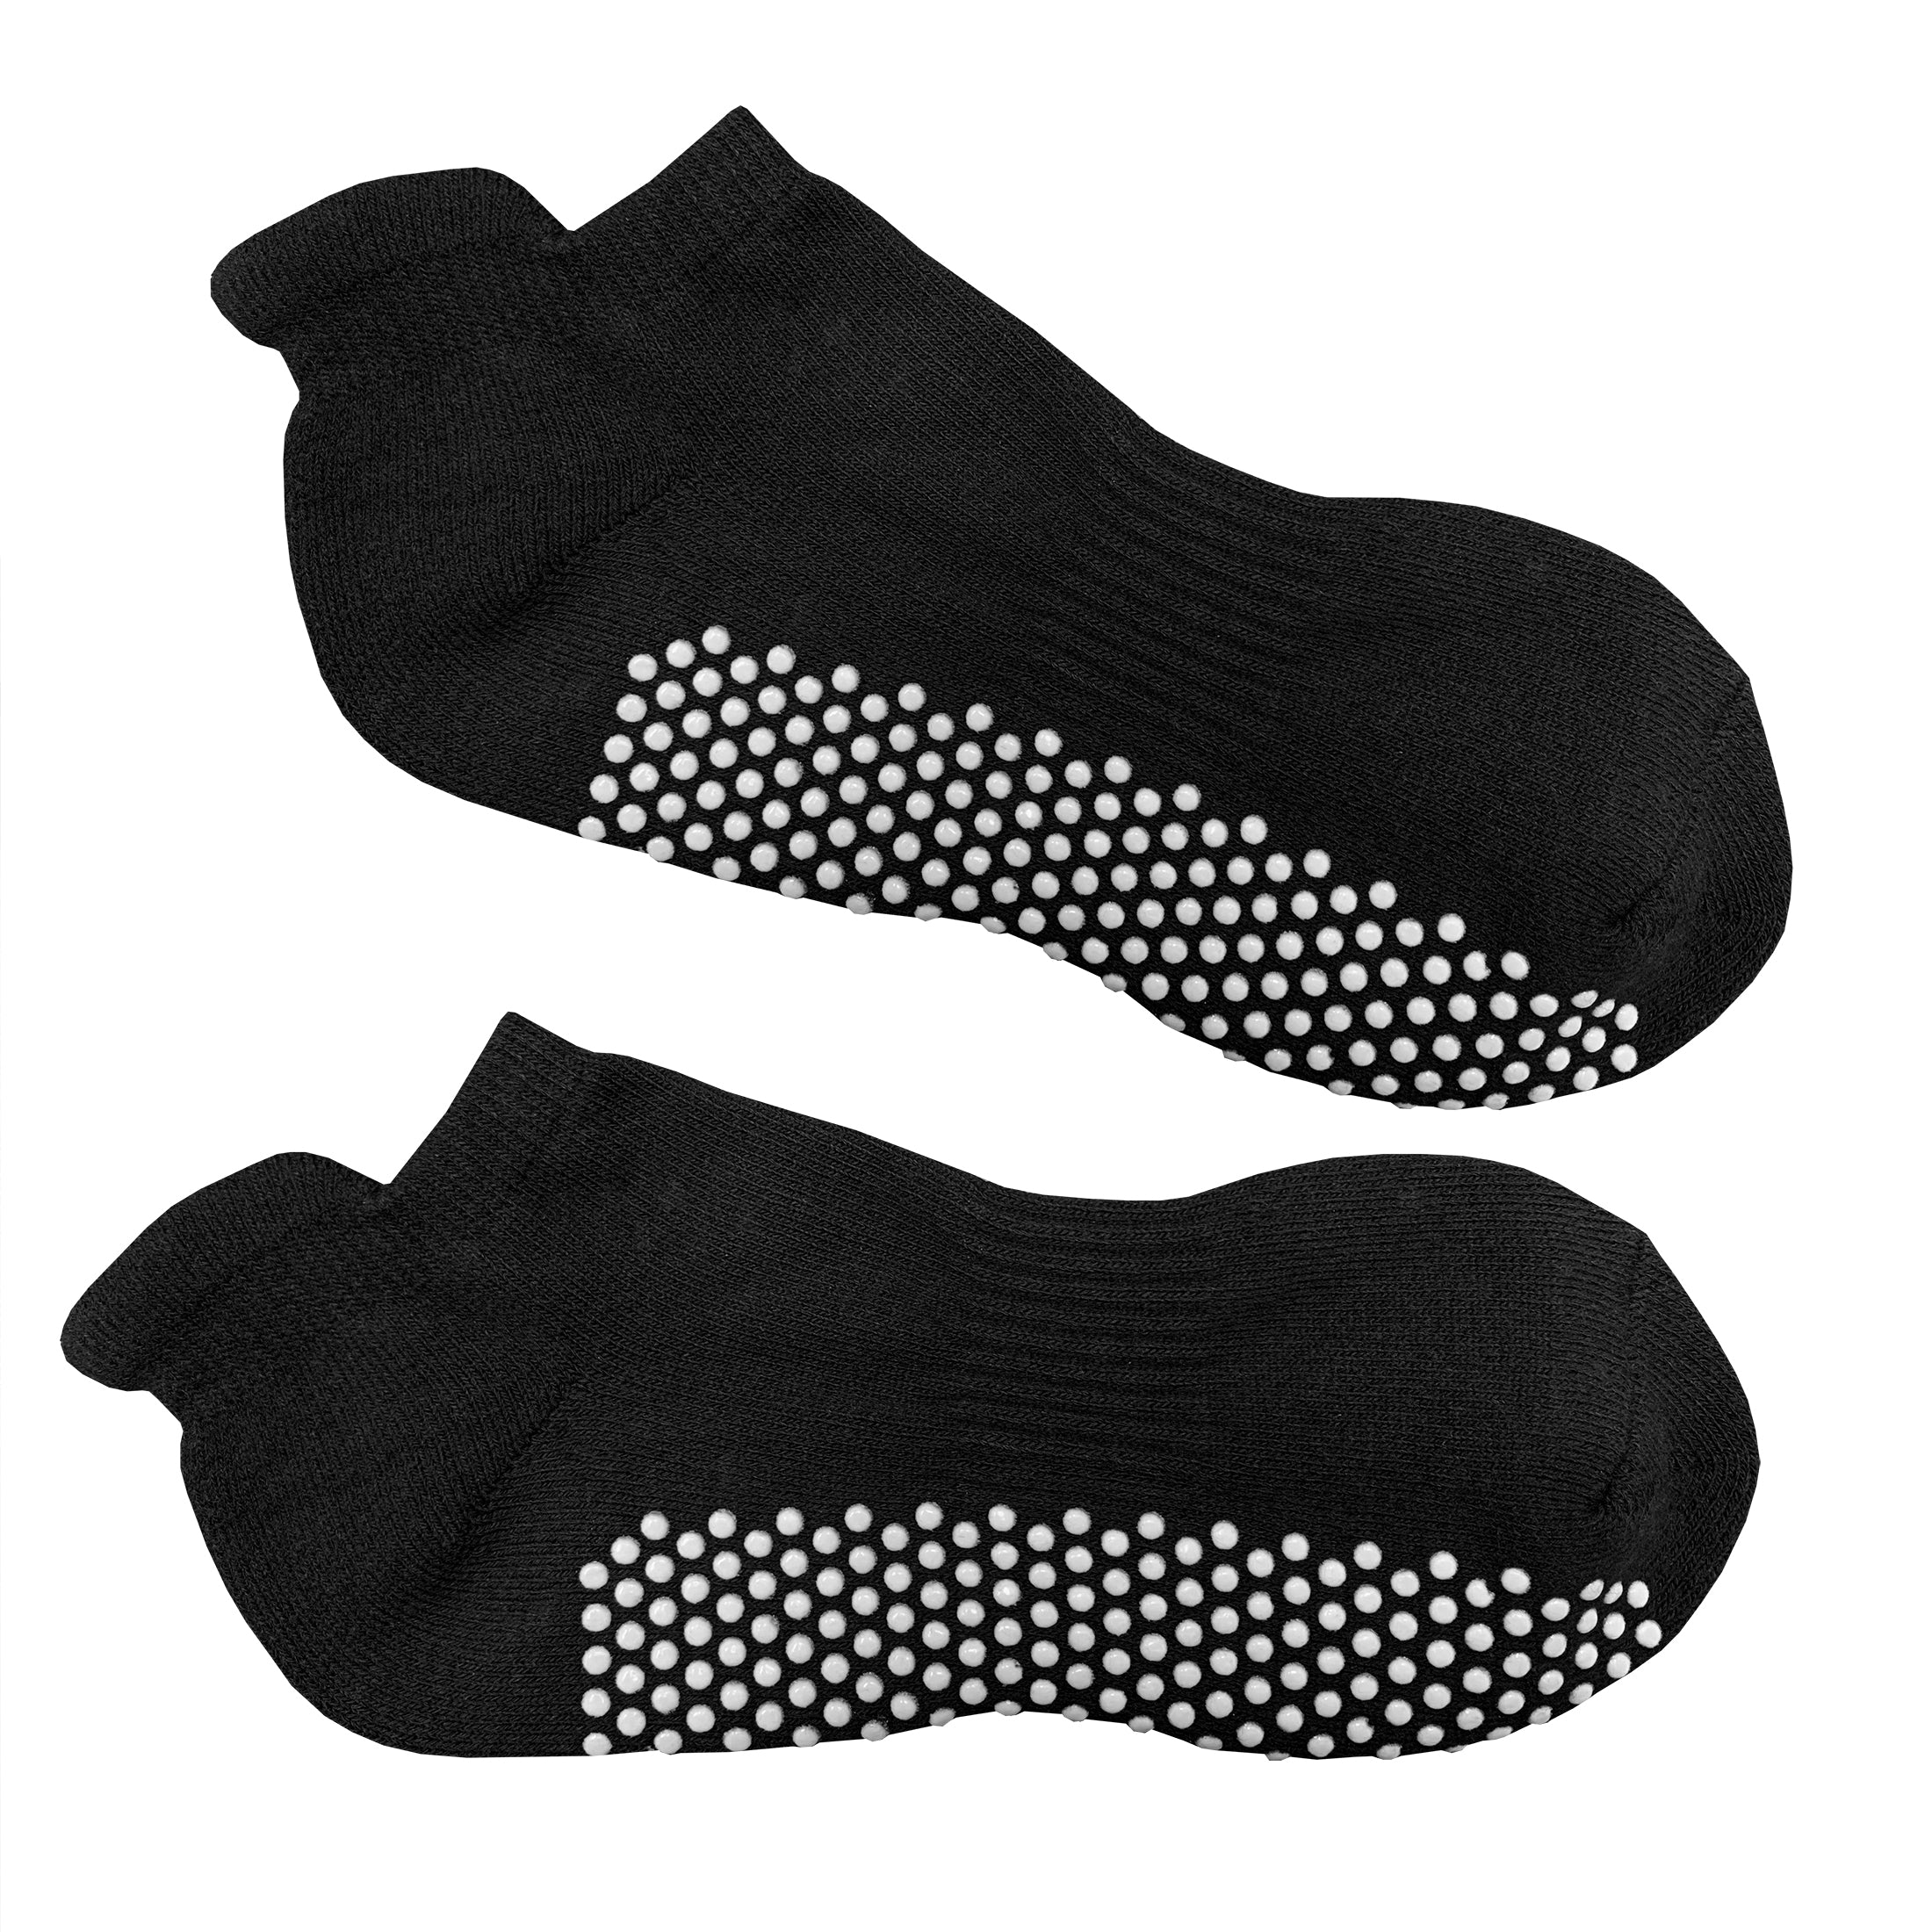 Aofa 1 Pair Non-slip Grip Socks Yoga Pilates Hospital Socks